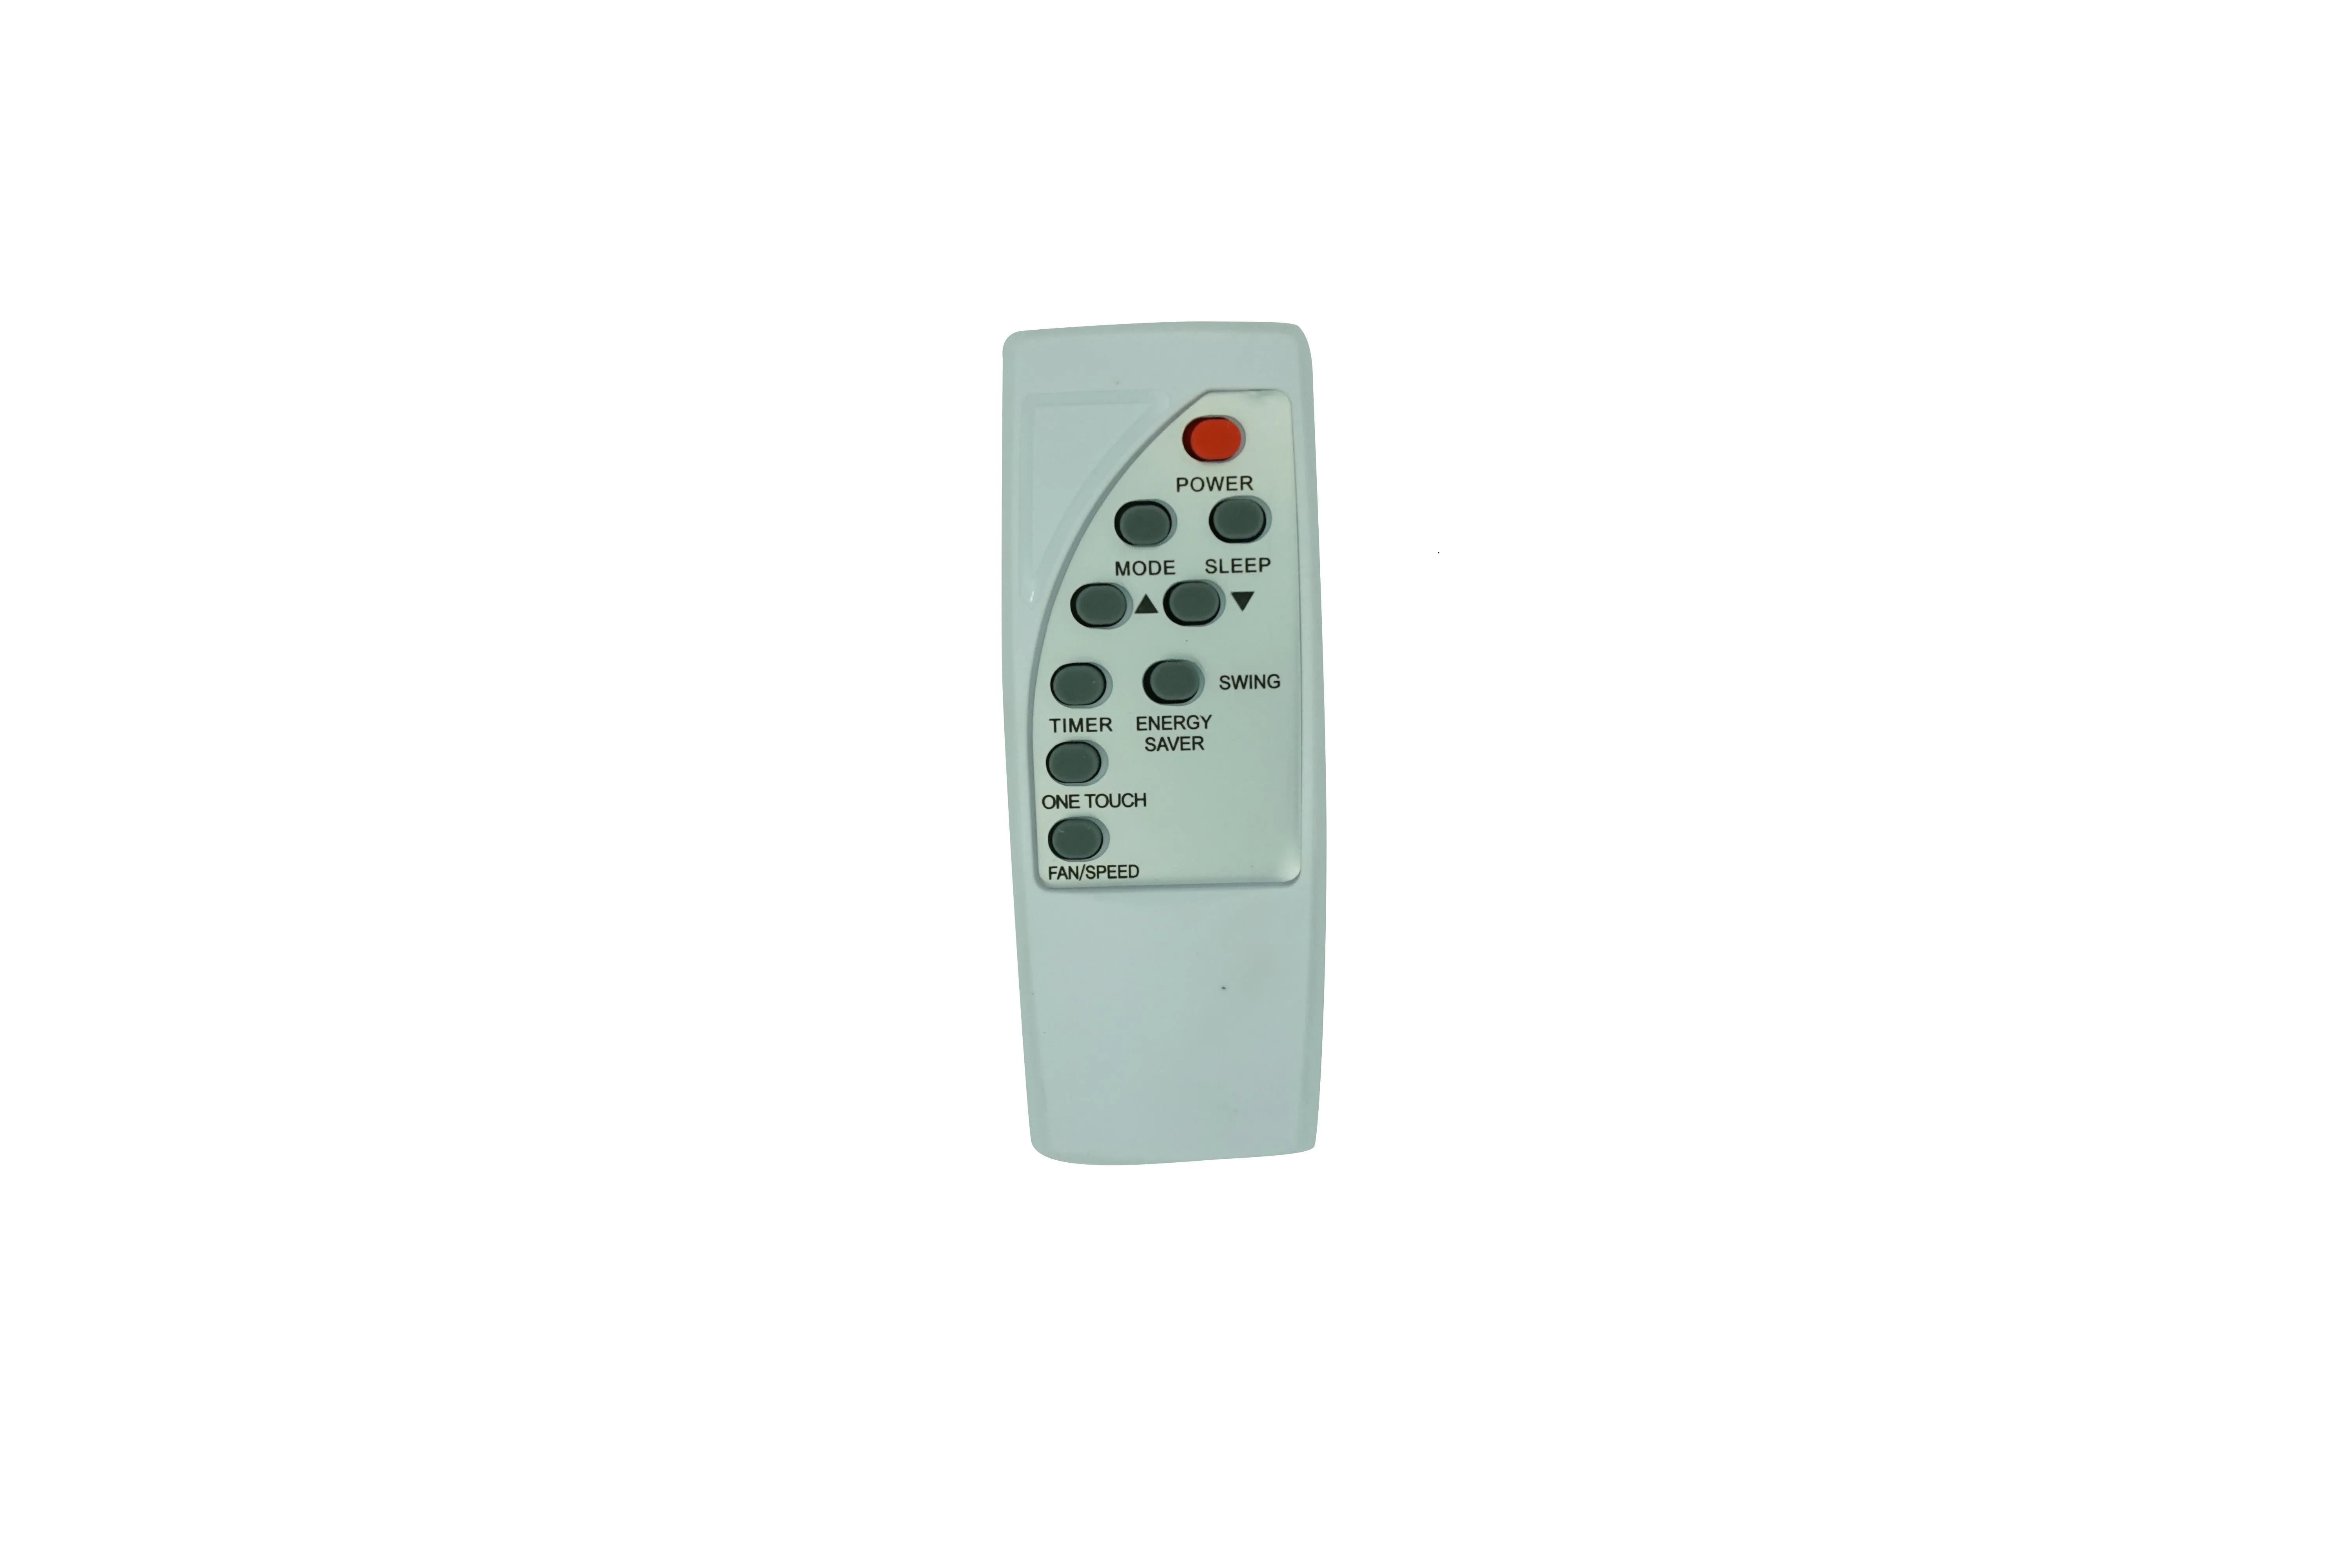 Remote Control For SMC RG32A/E CLASSIC RG32A/E Window Air Conditioner